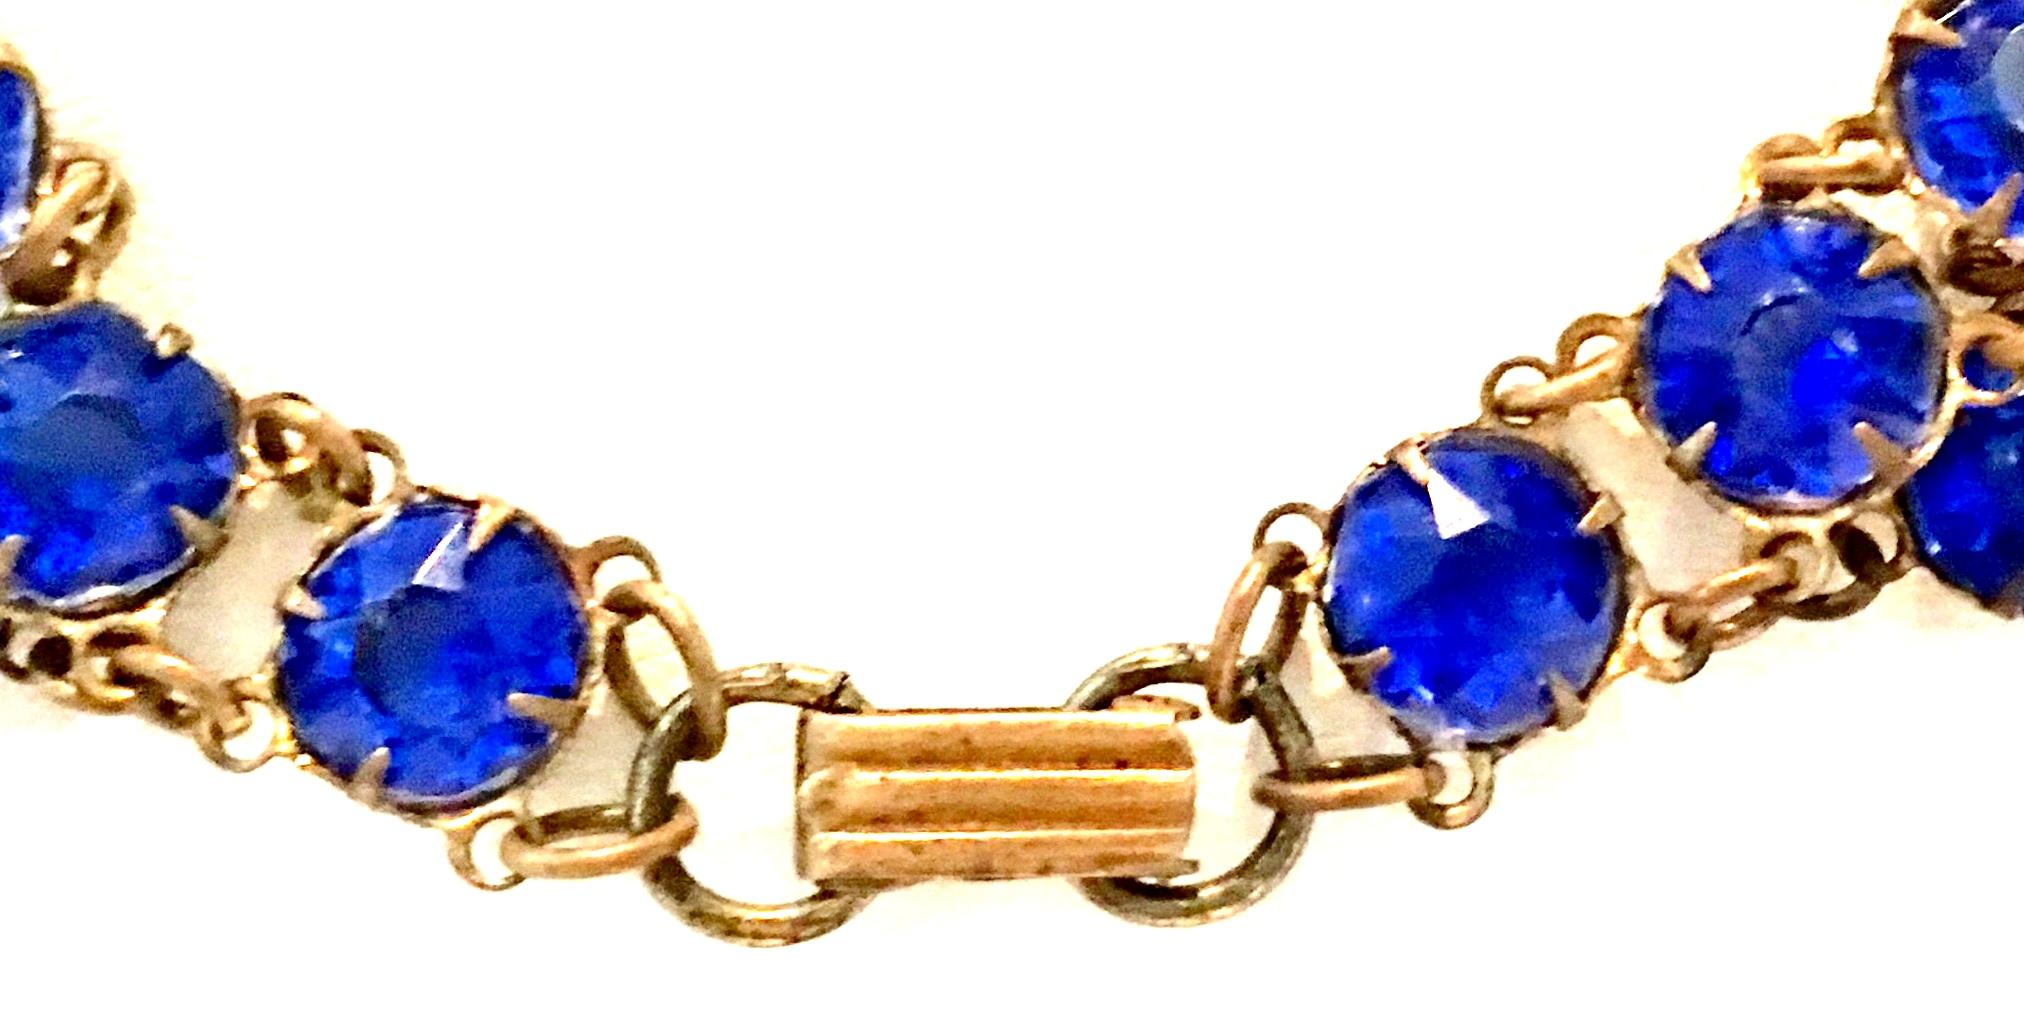 Antique Gilt Gold Sapphire Blue Faceted Glass Choker Necklace & Bracelet S/2 For Sale 8